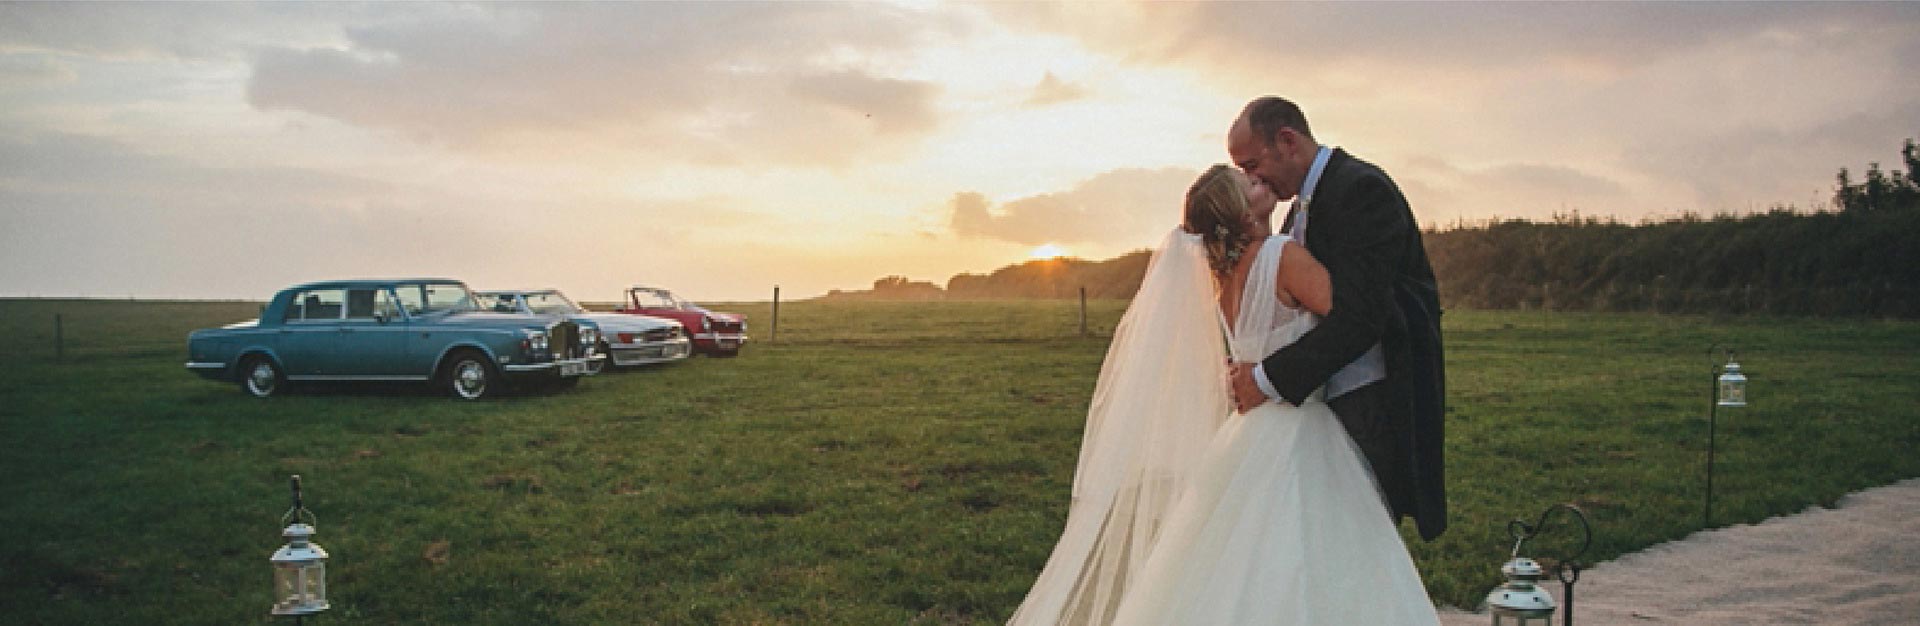 Devon field, married couple, cars, sunset